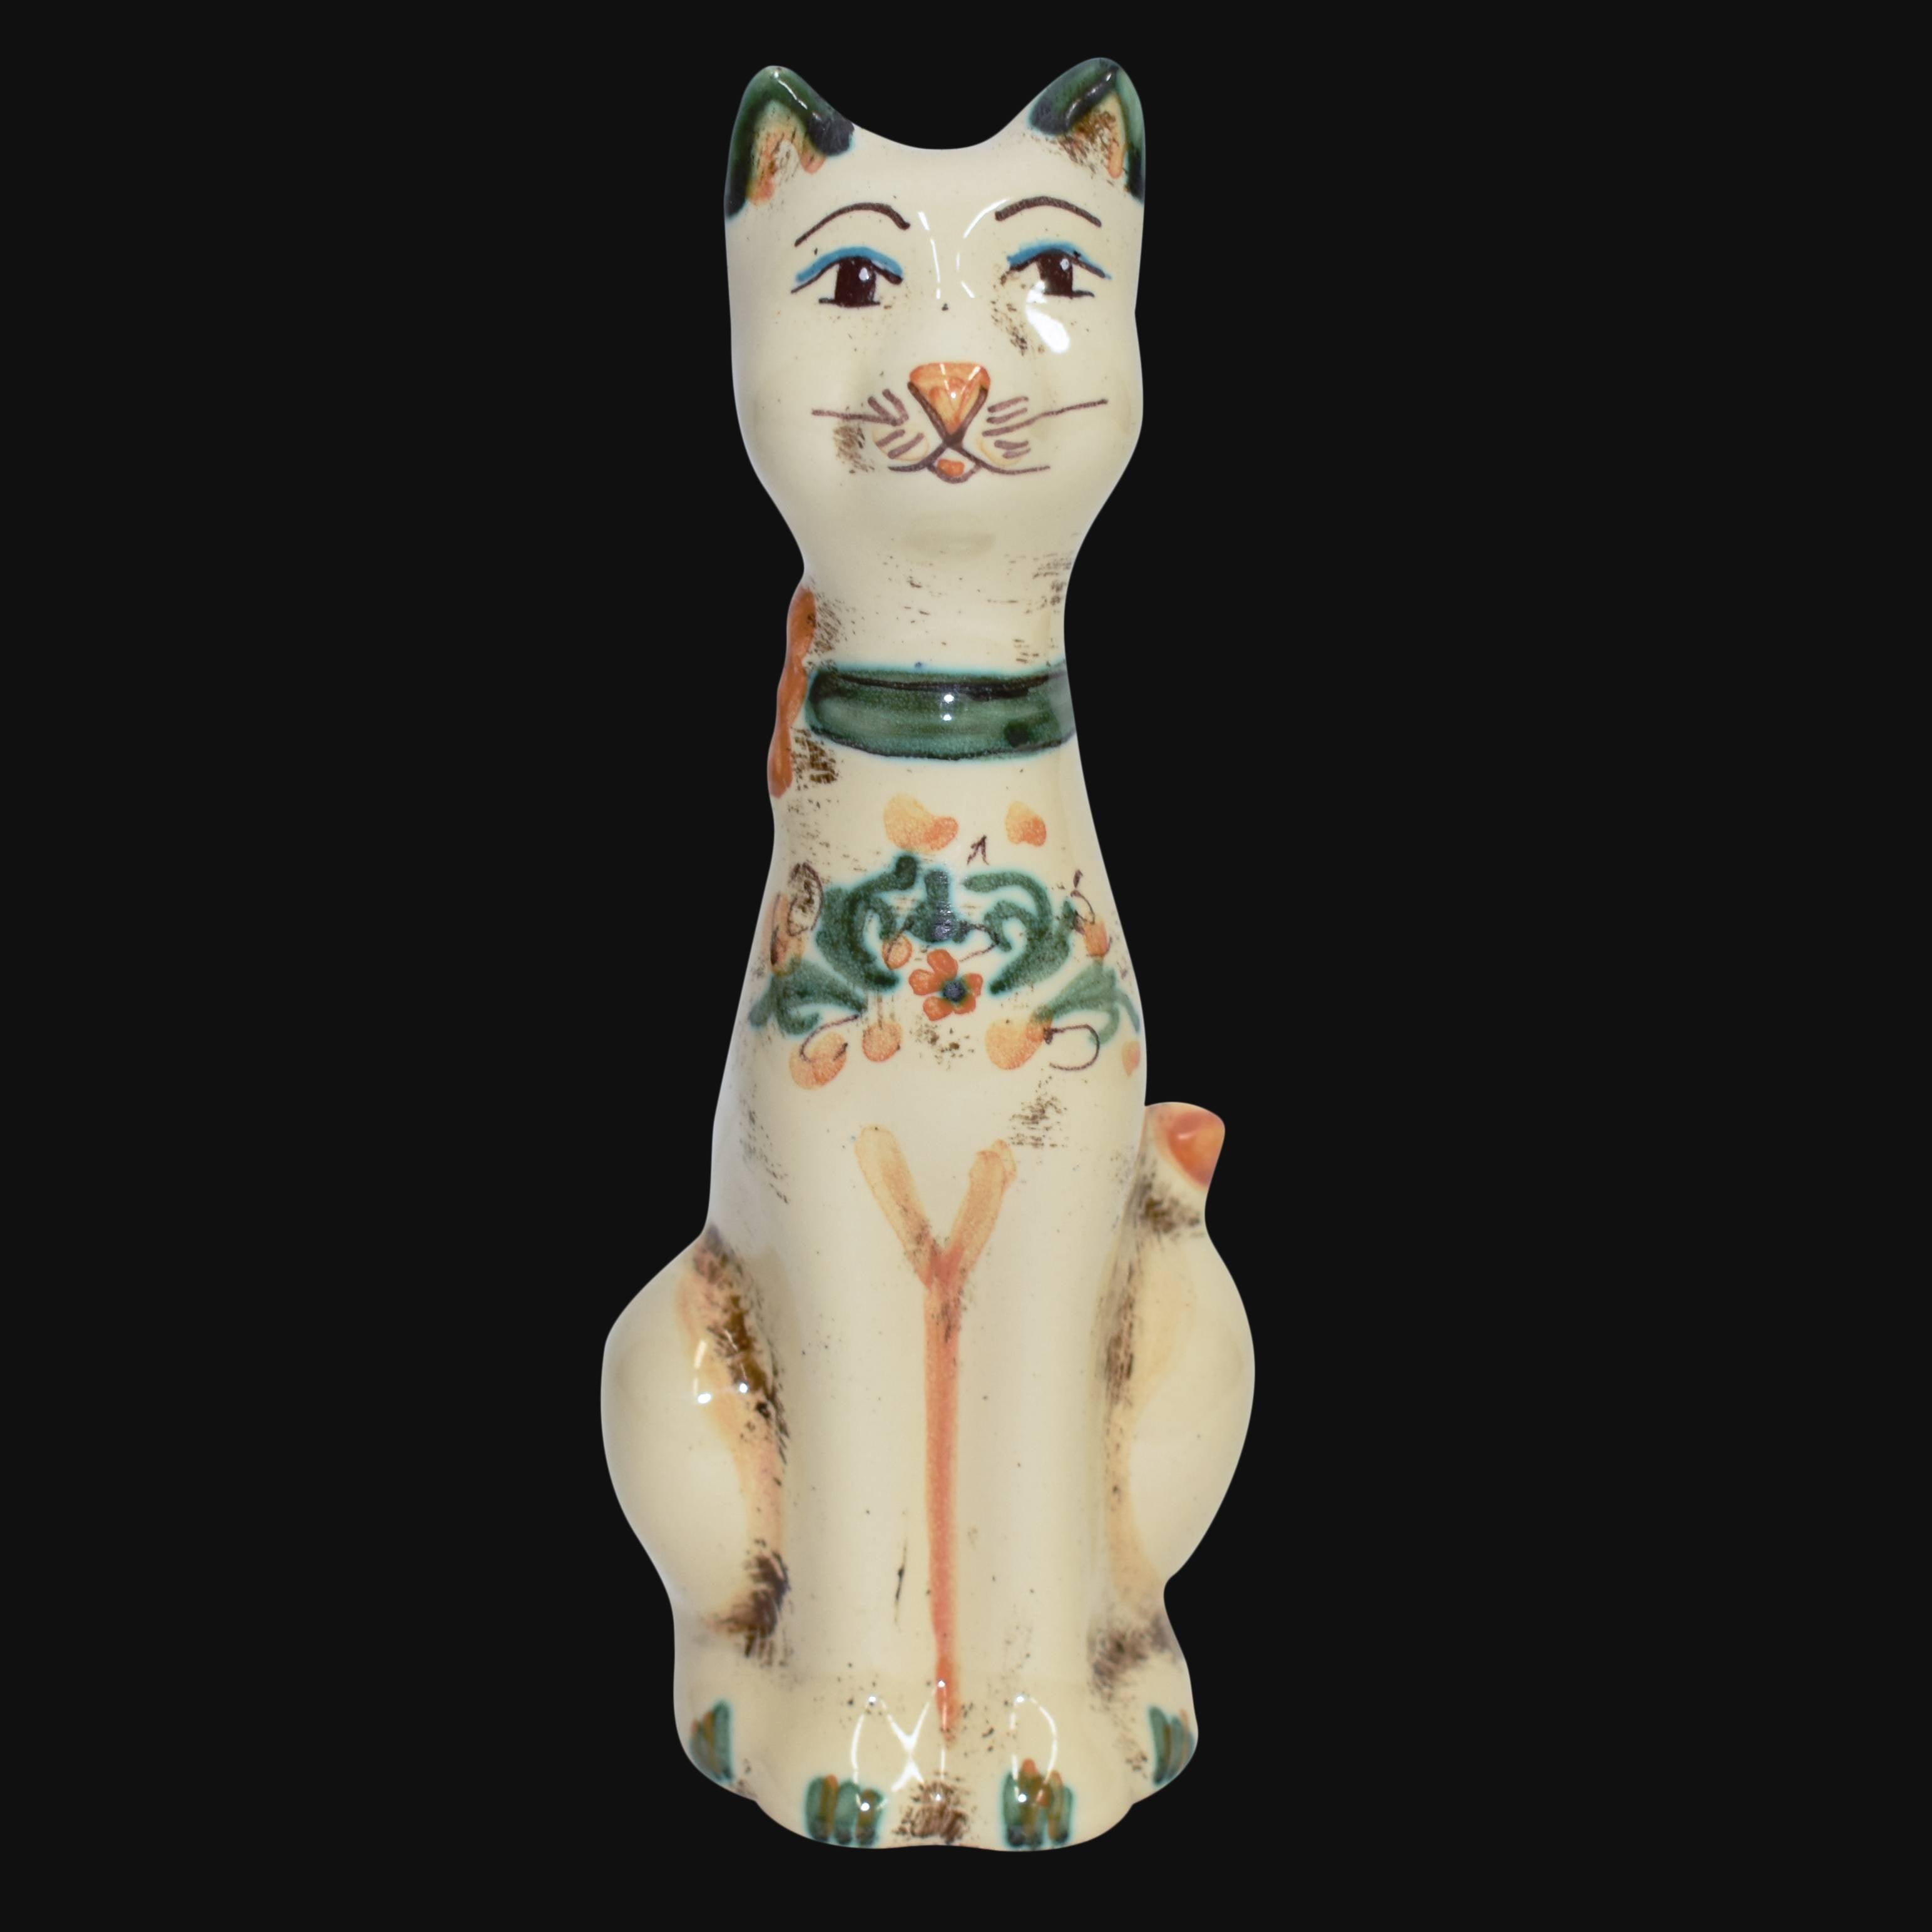 Aristogatto in ceramica s. arte verde/arancio - Ceramiche di Caltagirone Sofia - Ceramiche di Caltagirone Sofia